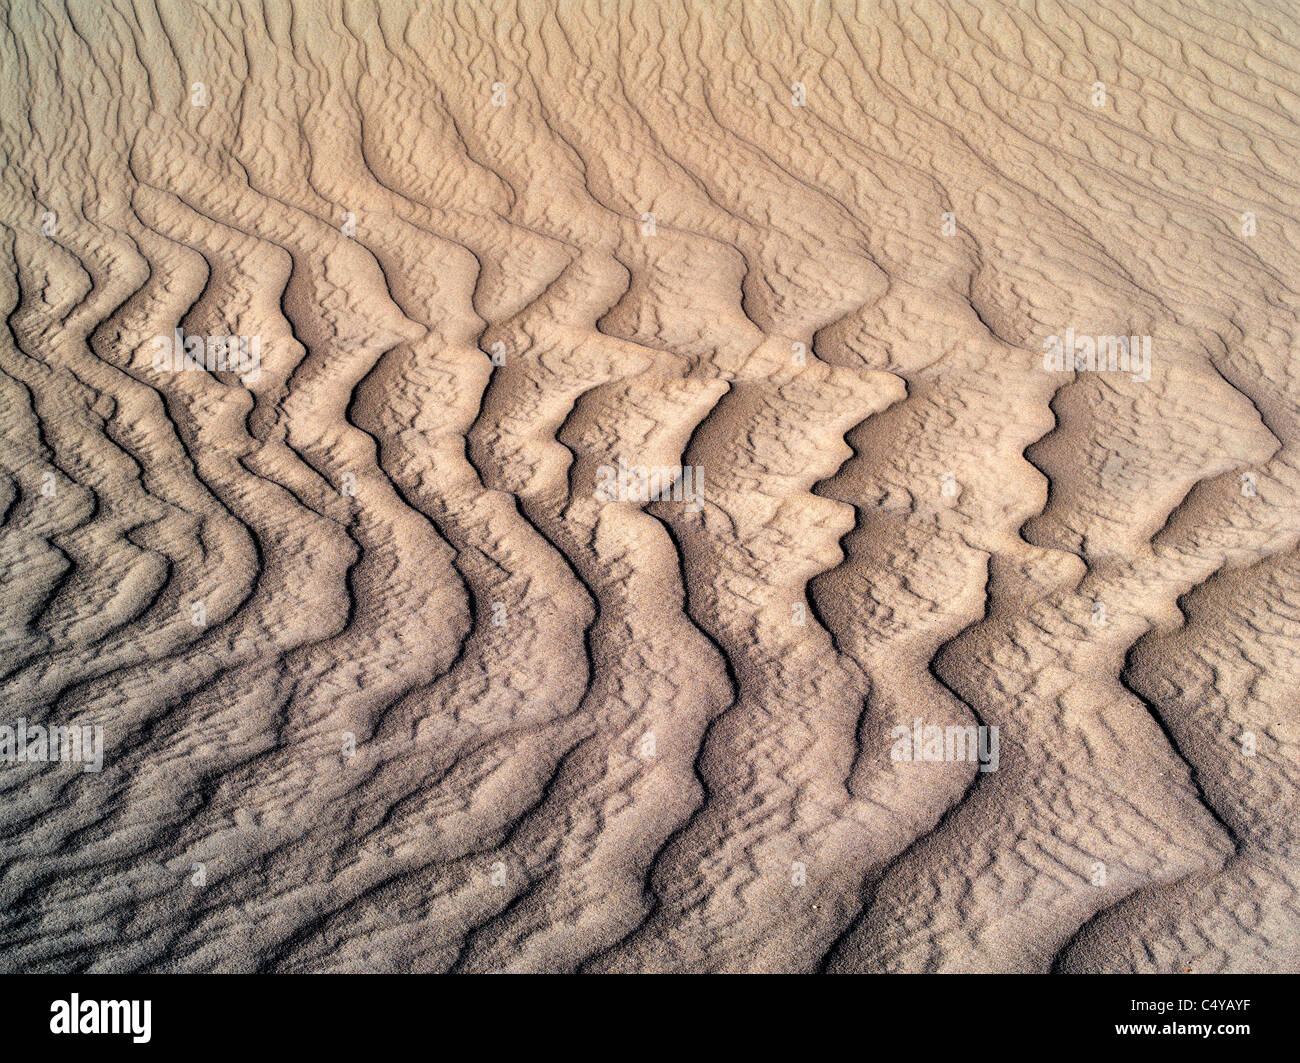 Muster im Sand nach intensiven Sturm. Death Valley Nationalpark, Kalifornien Stockfoto